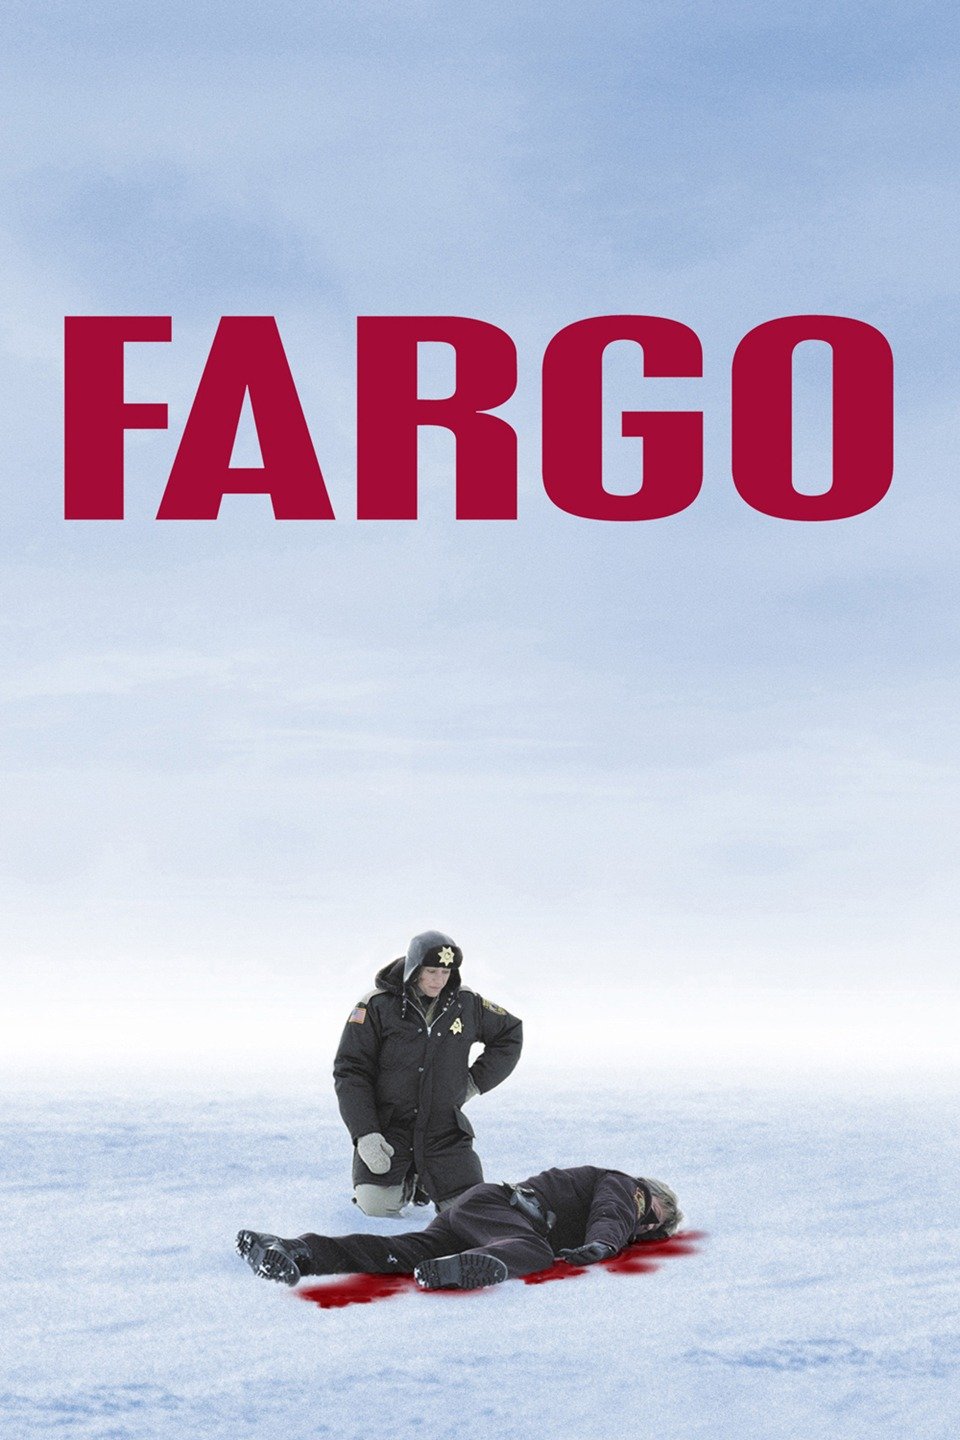 fargo movie review